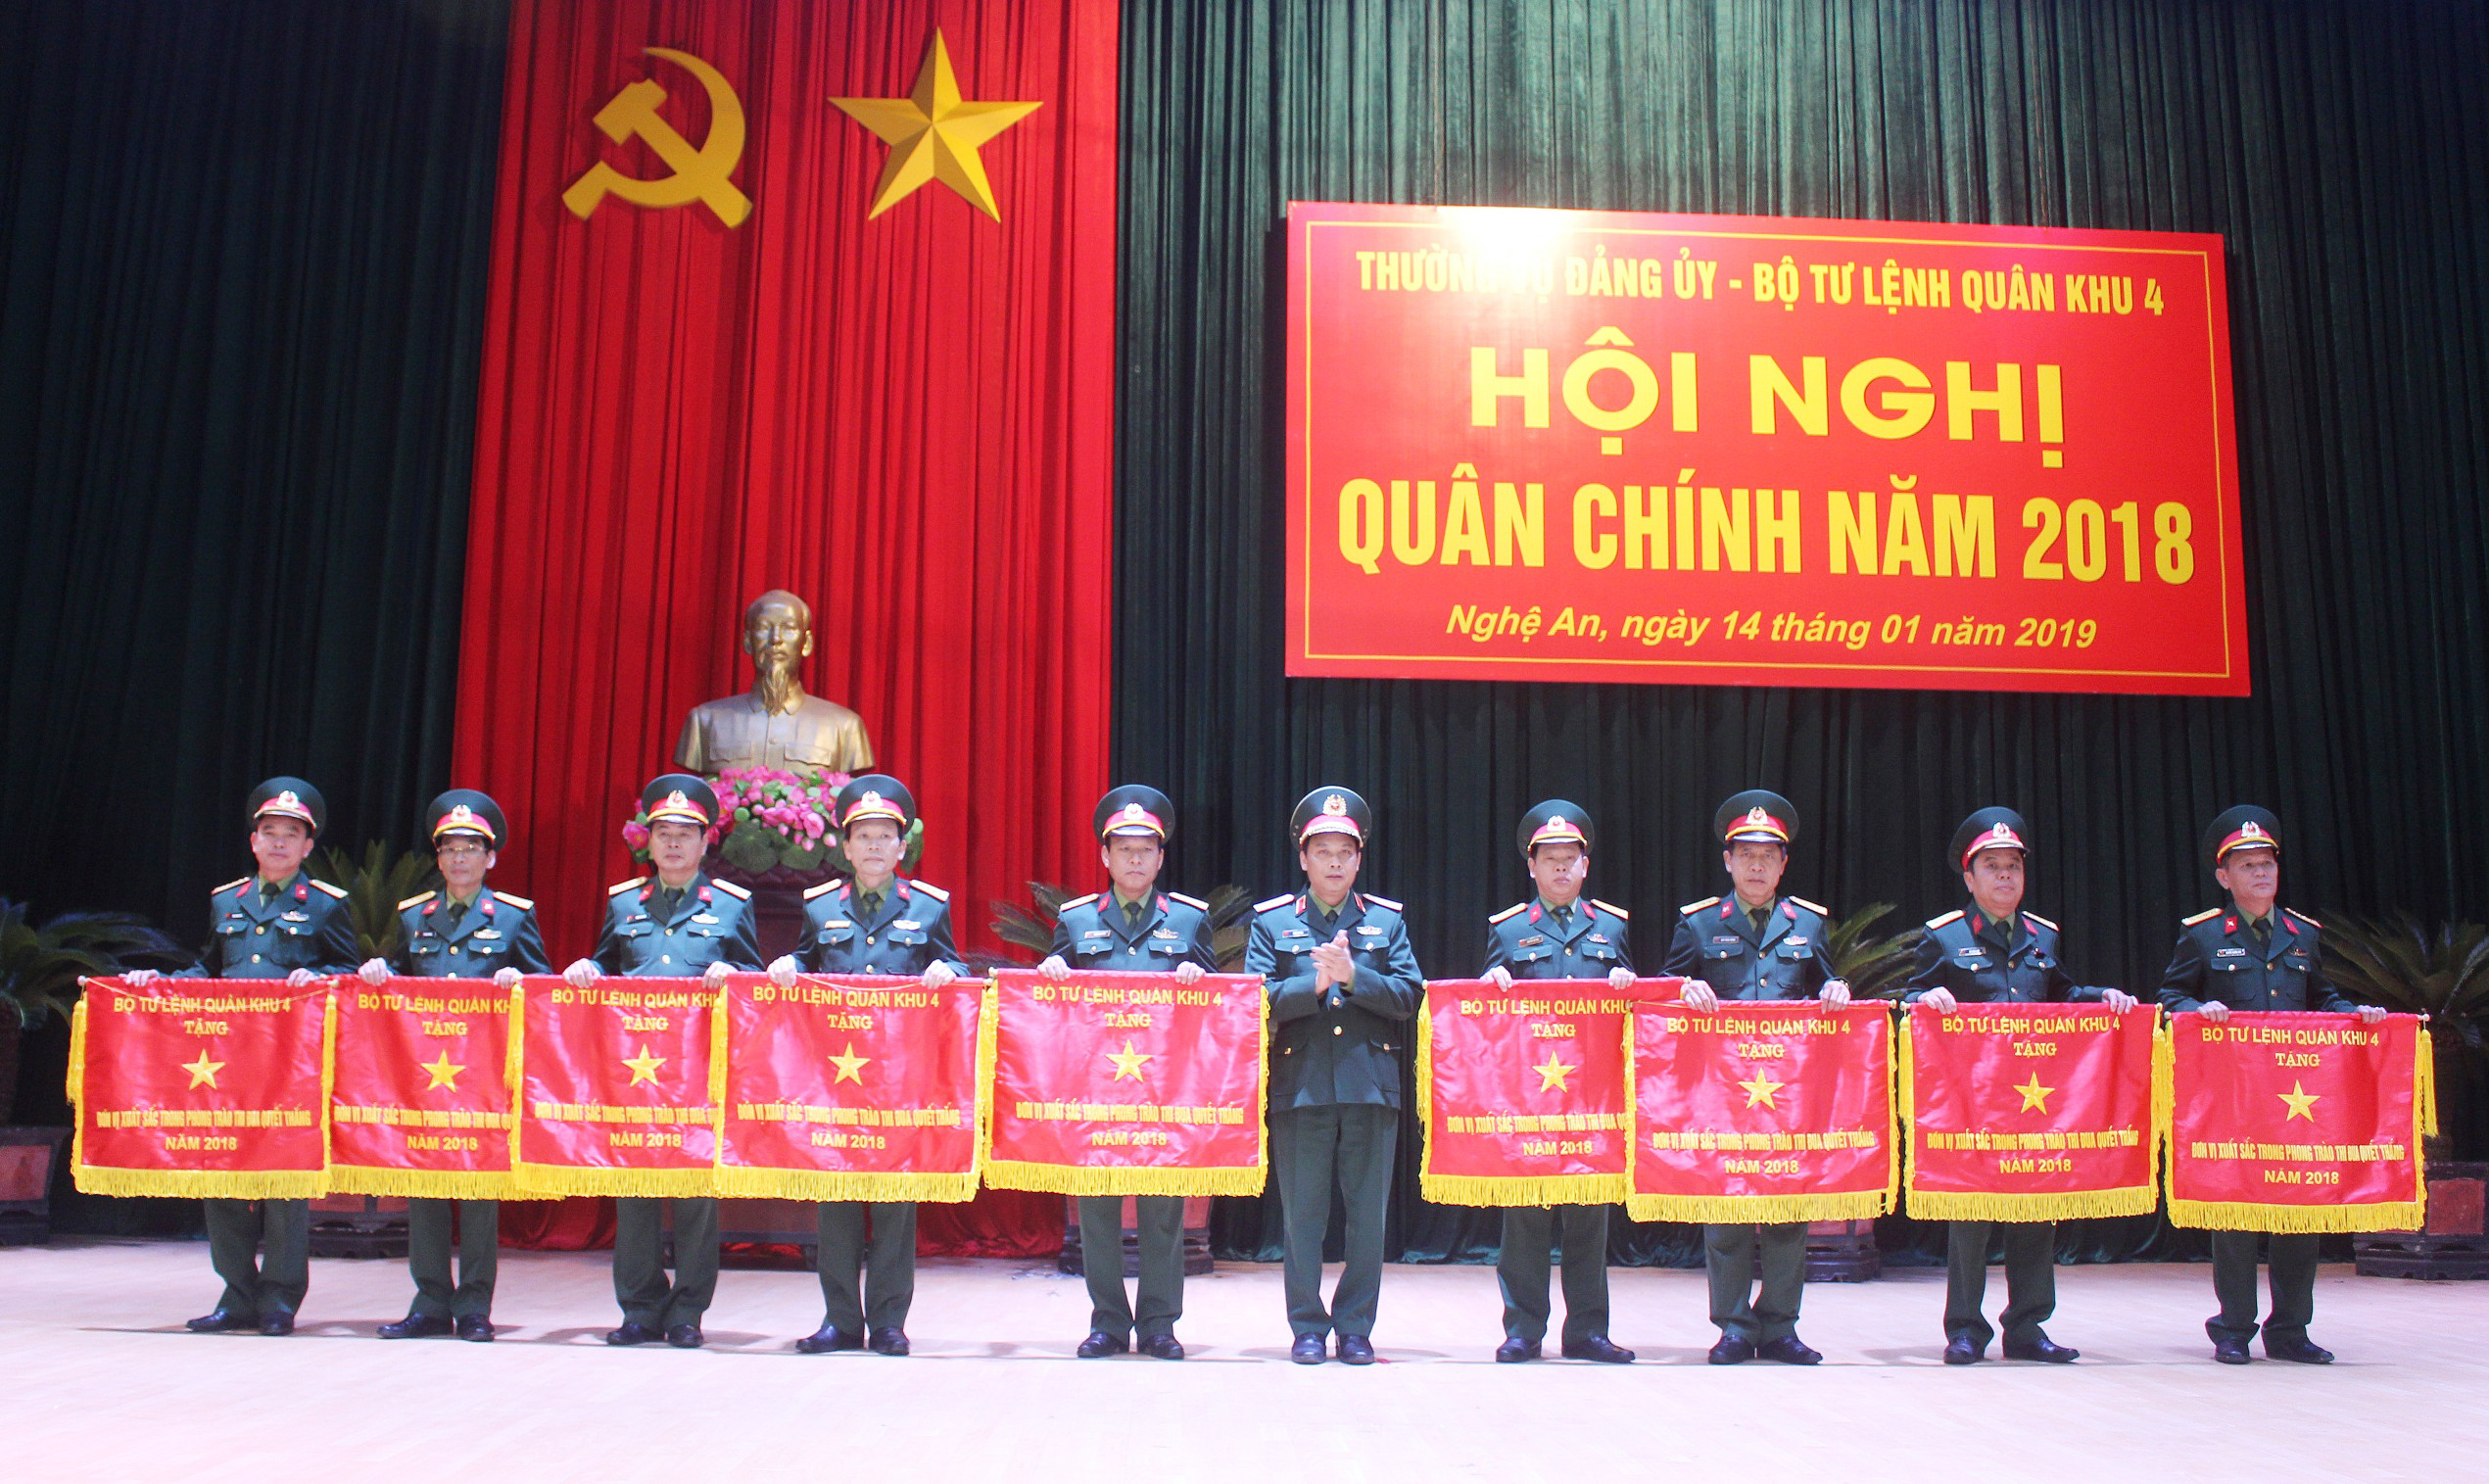 Thiếu tướng Trần Võ Dũng - Chính ủy Quân khu 4 trao Cờ thi đua của Bộ Tư lệnh Quân khu tặng các đơn vị. Ảnh: Mạnh Hùng